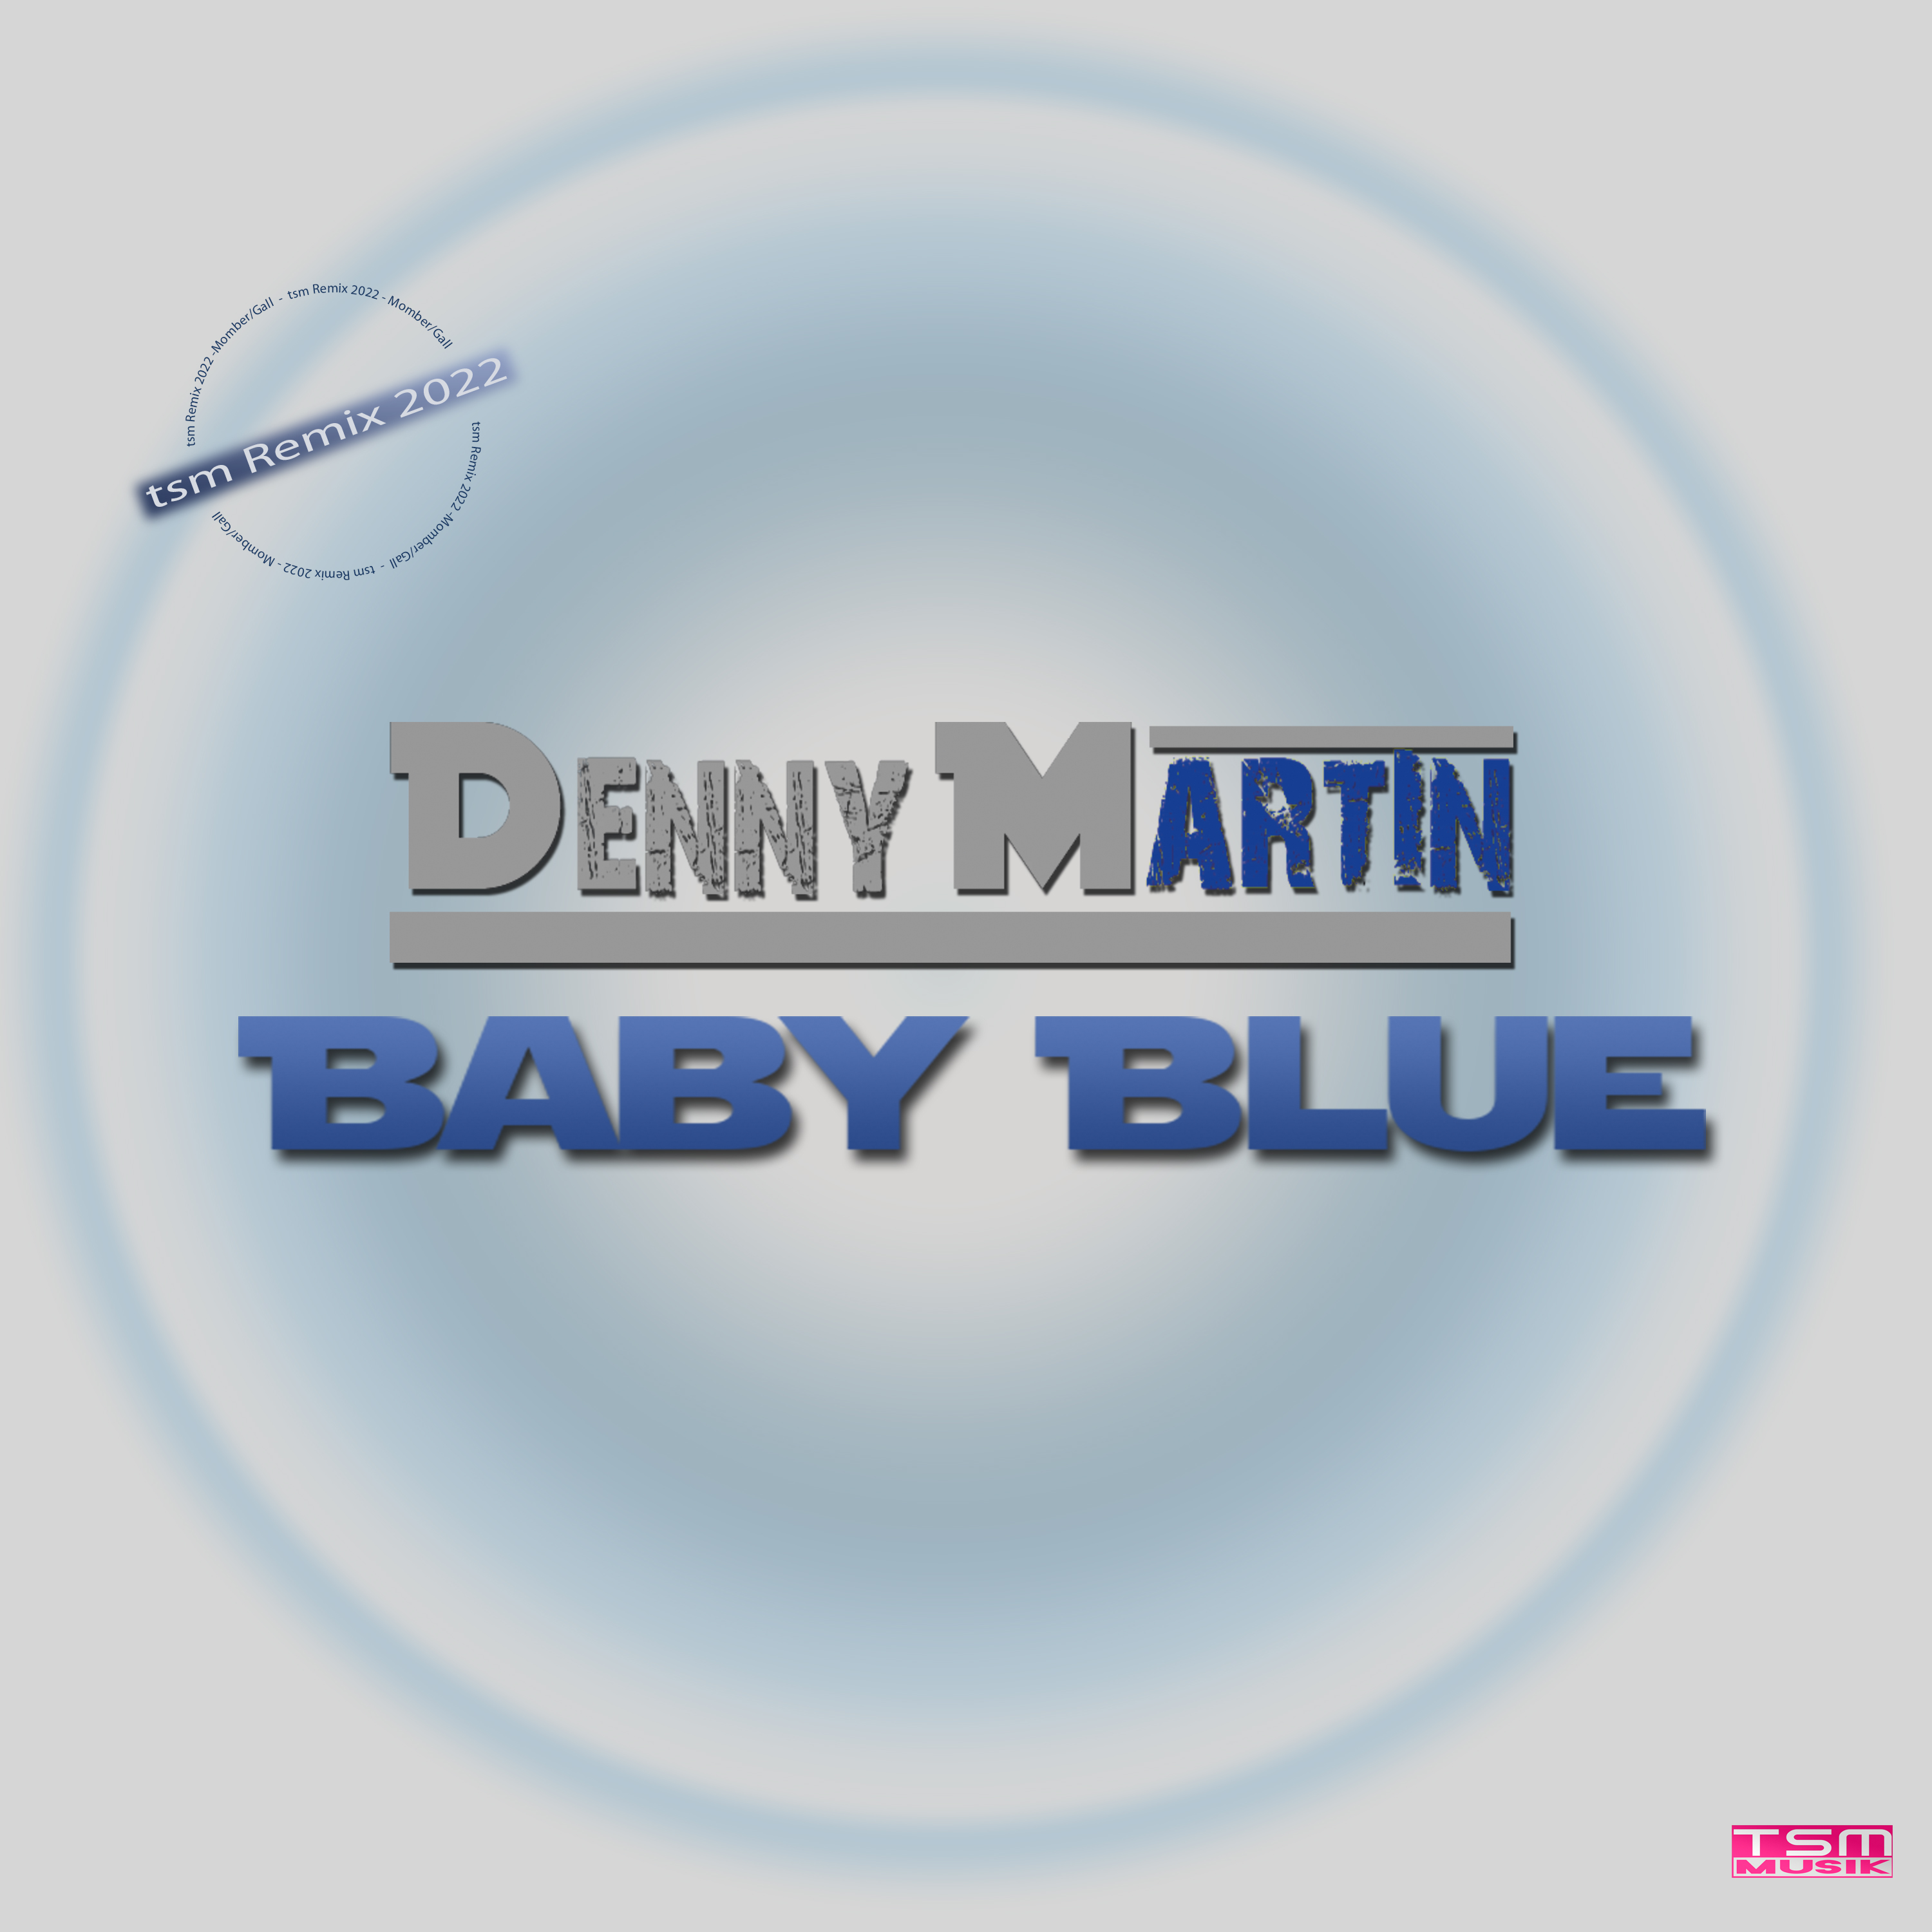 Denny Martin Baby Blue tsmremix